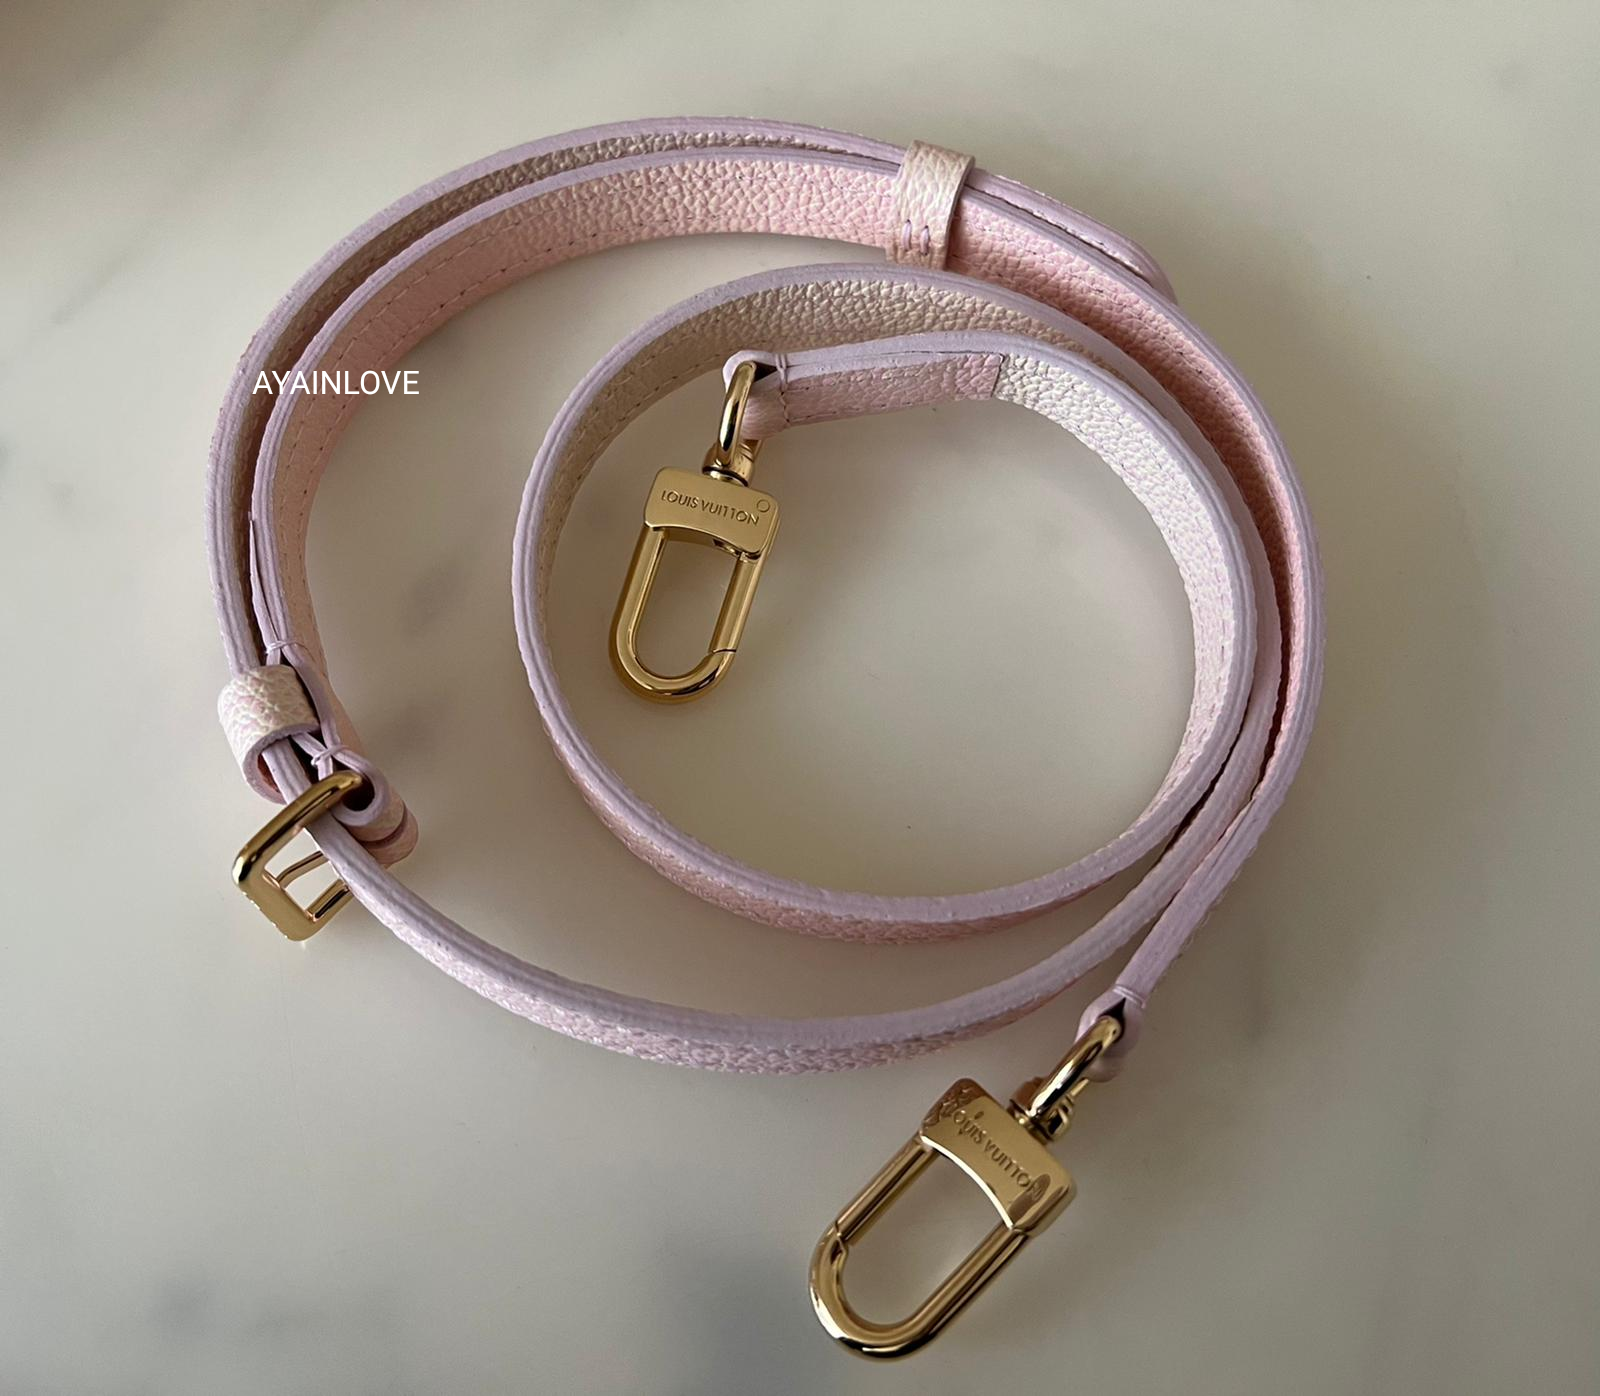 Louis Vuitton Monogram Nano Bracelet 17